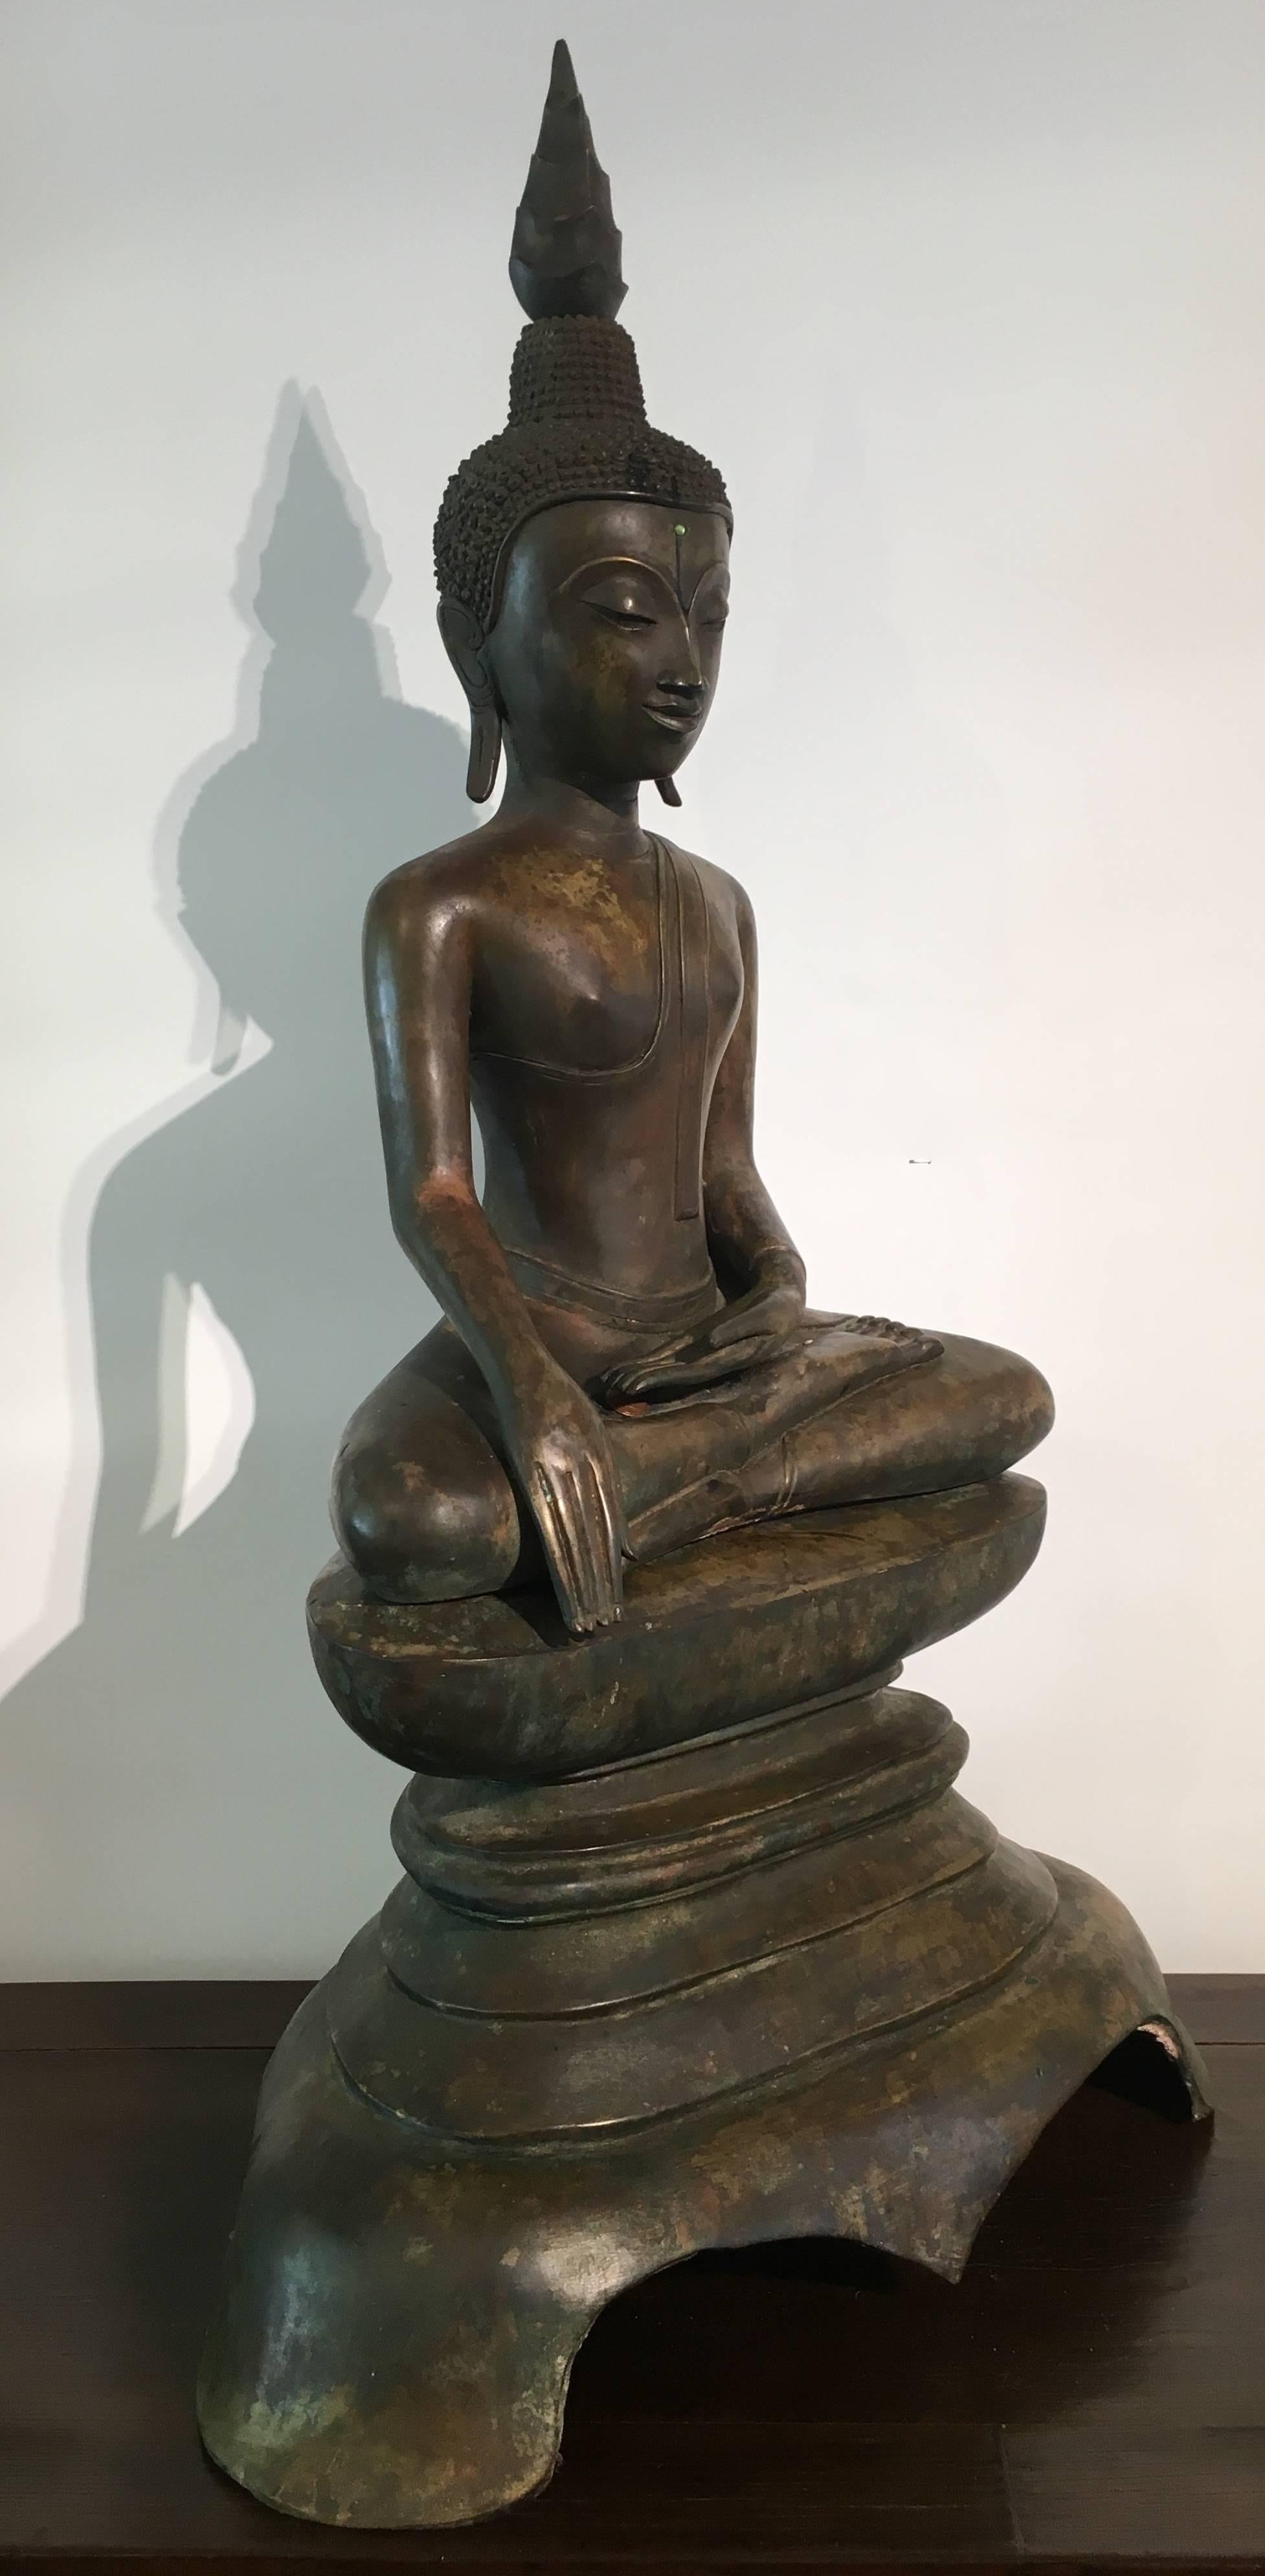 Une belle figure du Bouddha historique Shakyamuni assis en bhumisparsha, signifiant le moment de l'illumination du Bouddha, Laos, XVIIe-XVIIIe siècle.
Bien moulé et présentant une belle patine, le Bouddha est assis sur un haut piédestal moulé